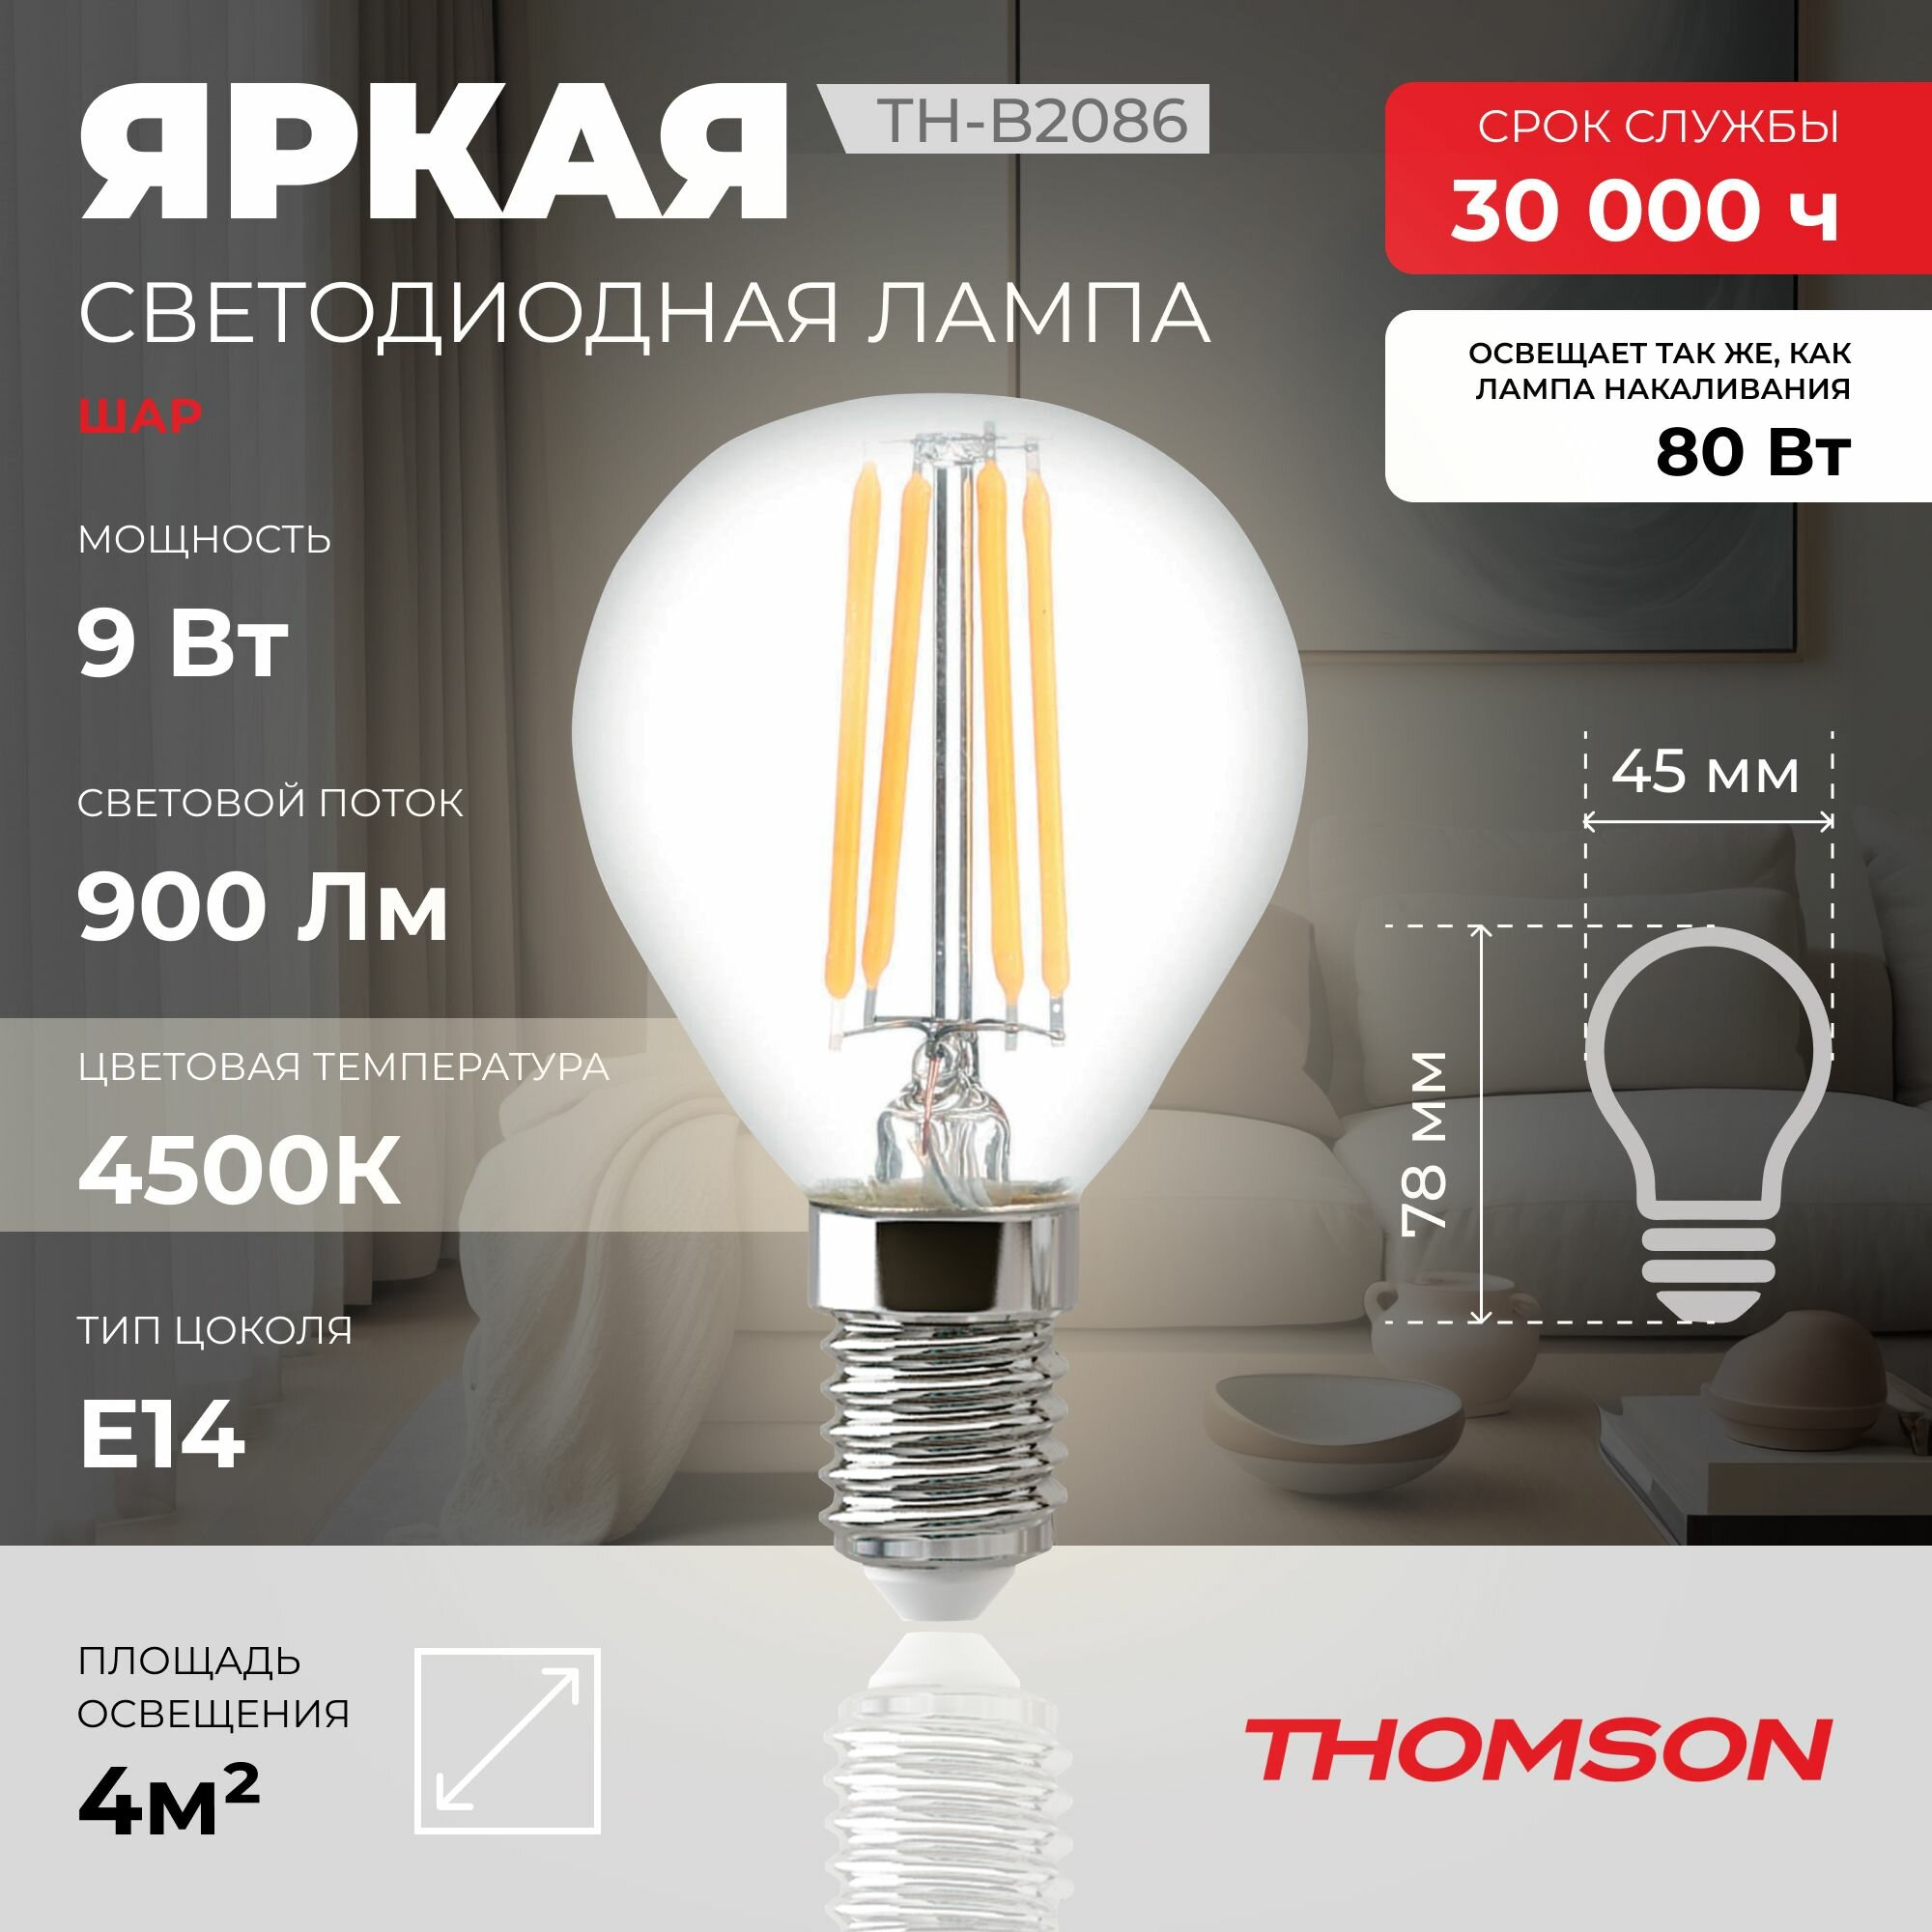 Лампочка Thomson филаментная TH-B2086 9 Вт, E14, 4500K, шар, нейтральный белый свет